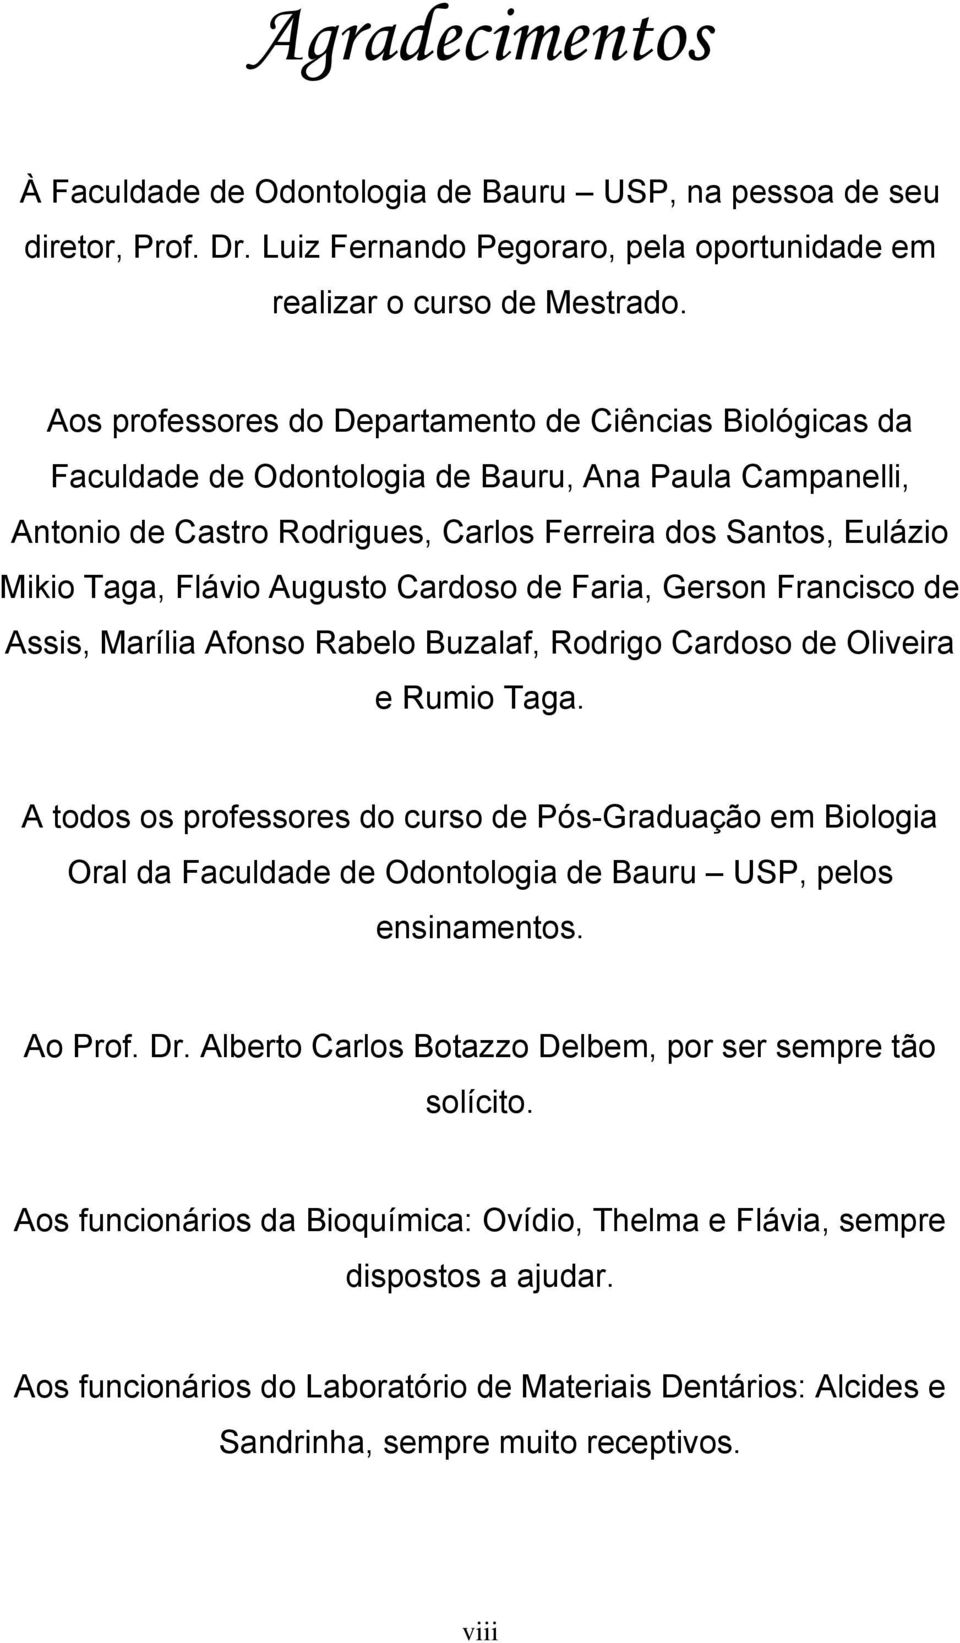 Augusto Cardoso de Faria, Gerson Francisco de Assis, Marília Afonso Rabelo Buzalaf, Rodrigo Cardoso de Oliveira e Rumio Taga.